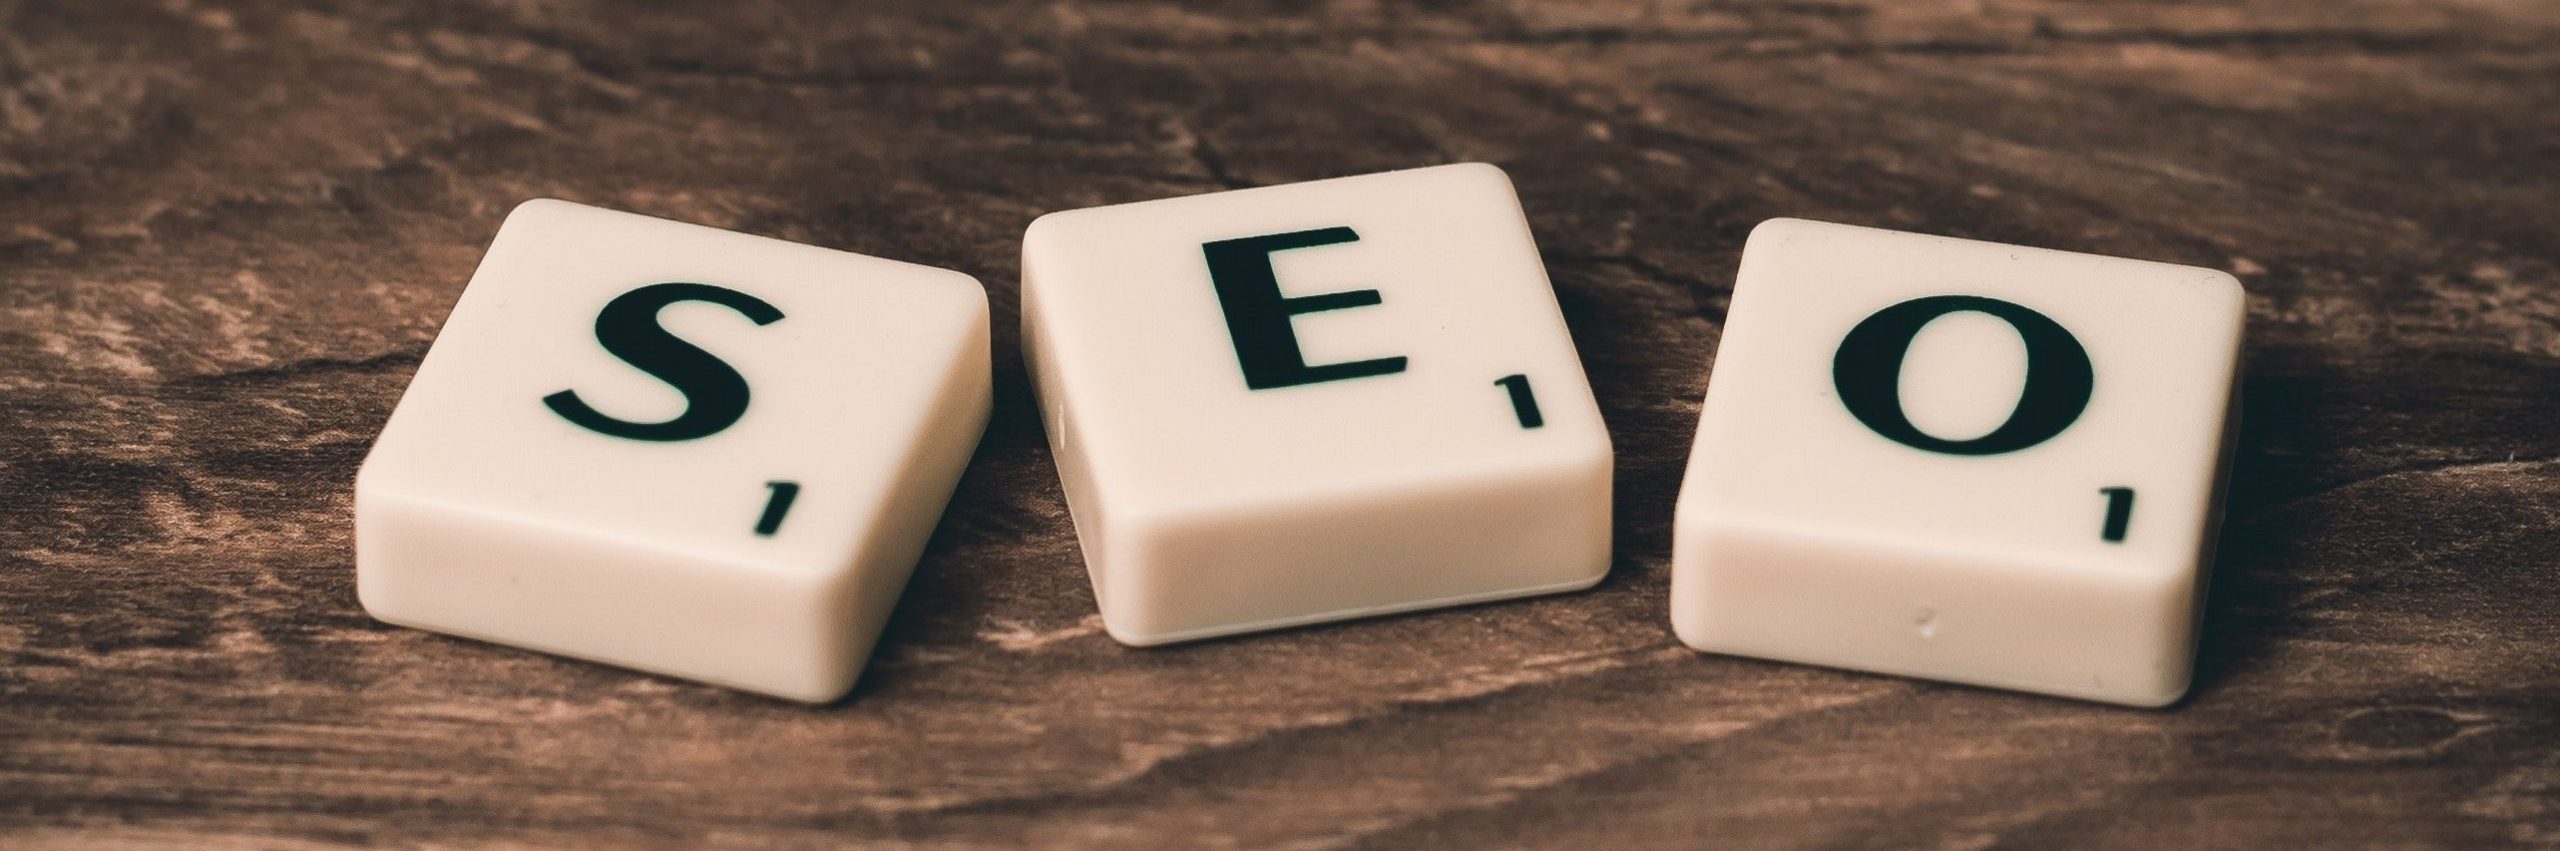 imagen de 3 fichas de worddle con las letras S, E, O formando la palabra SEO